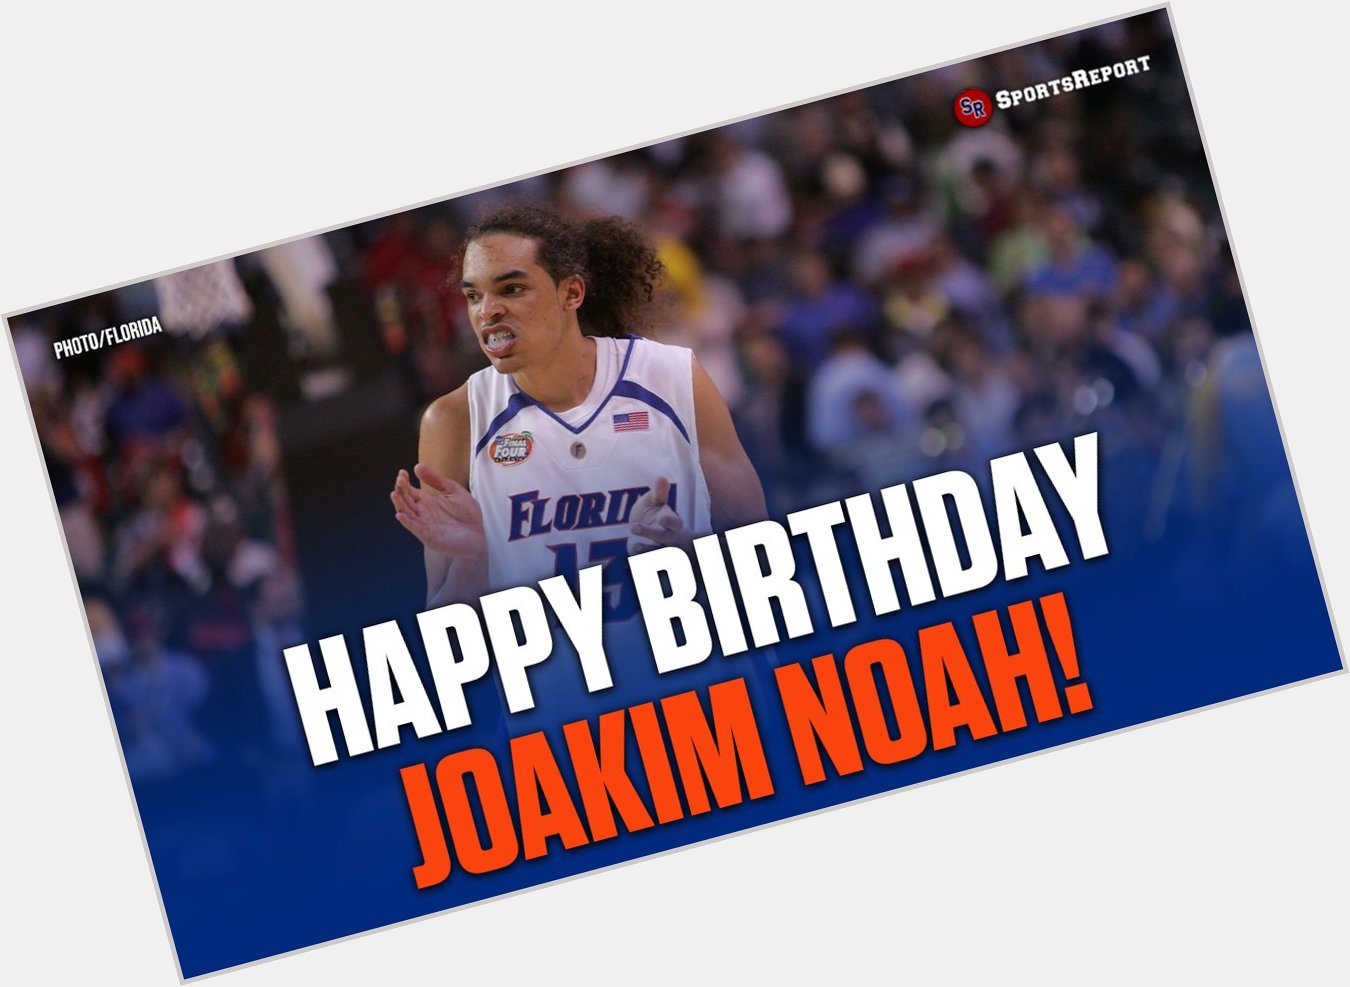  Fans, let\s wish great Joakim Noah a Happy Birthday! 